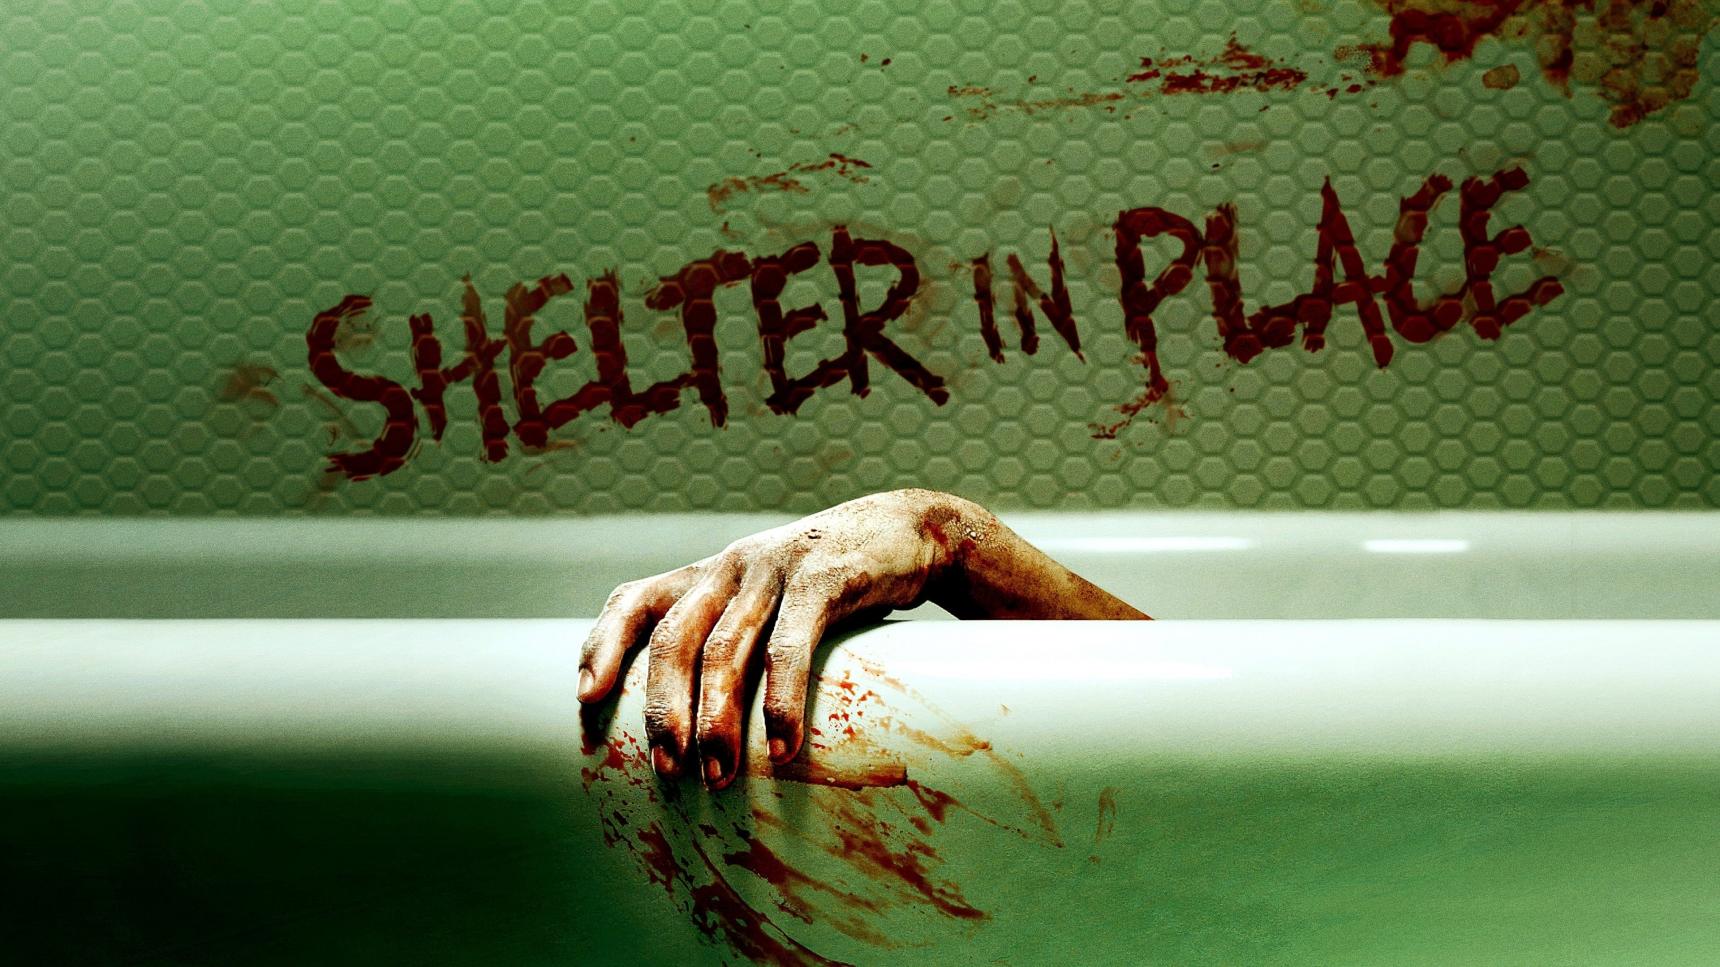 Fondo de pantalla de la película Shelter in Place en Cliver.tv gratis